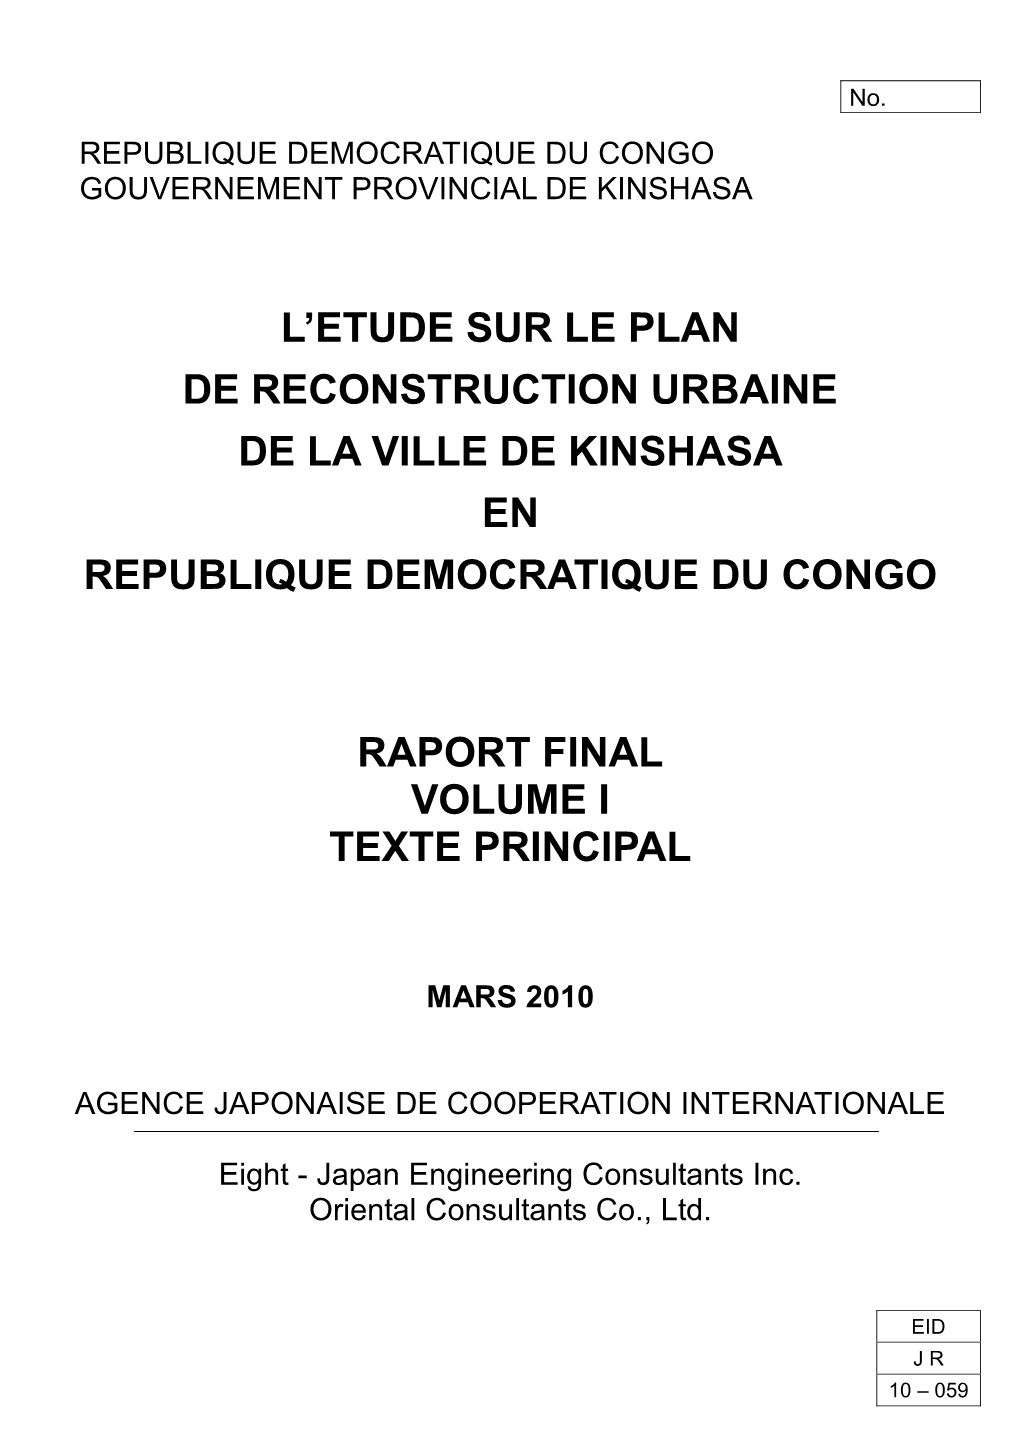 L'etude Sur Le Plan De Reconstruction Urbaine De La Ville De Kinshasa En Republique Democratique Du Congo Raport Final Volume